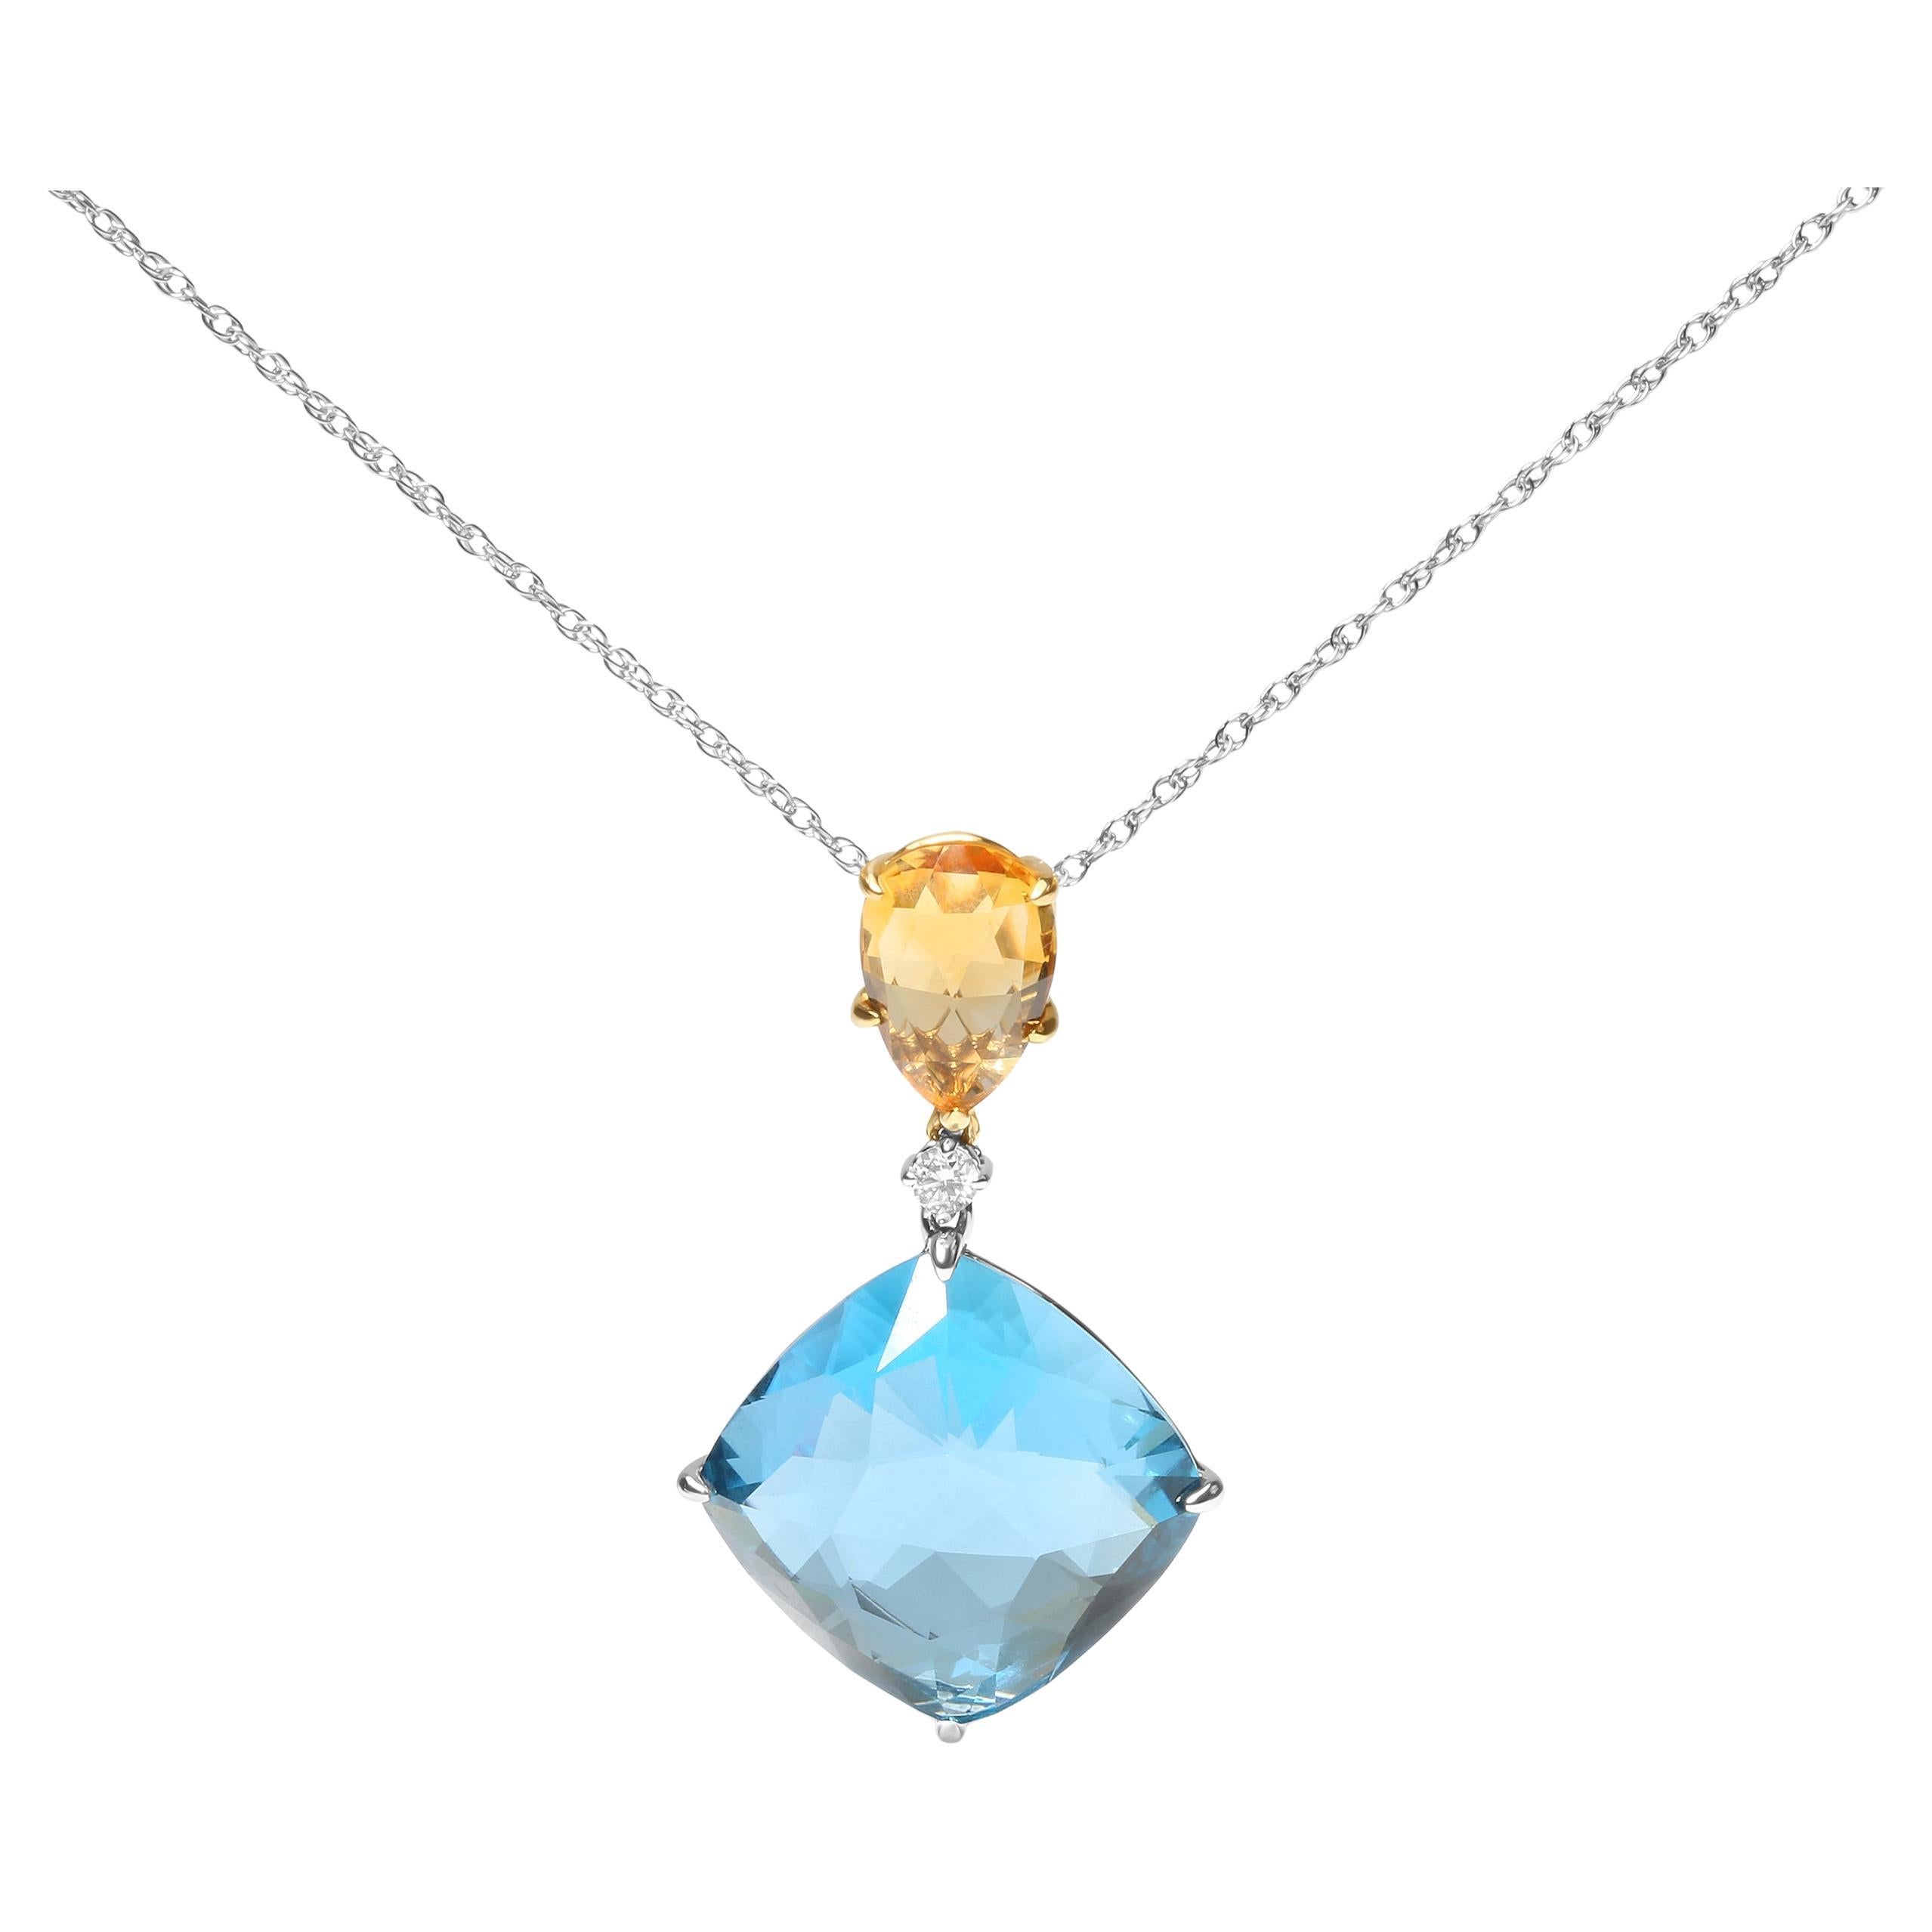 Collier pendentif en or 18 carats avec diamants, citrine jaune et topaze bleu ciel